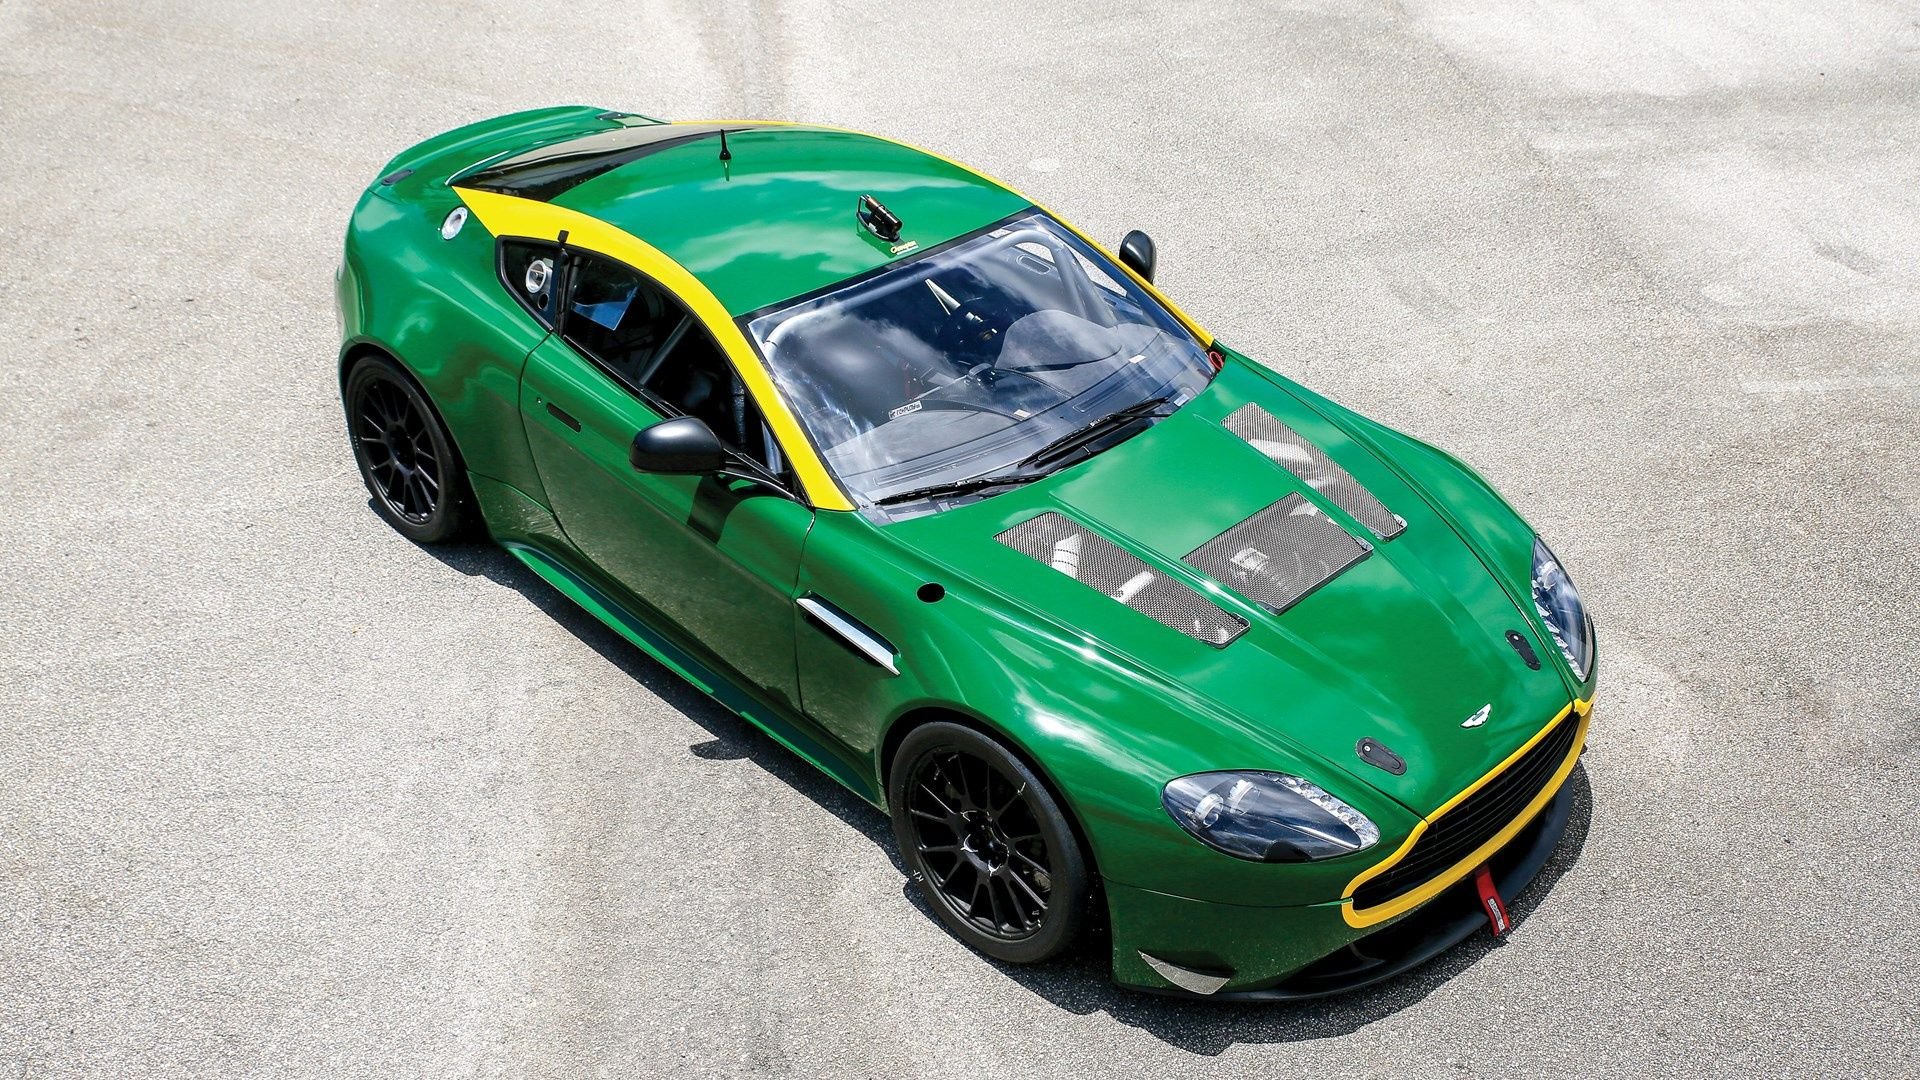 Aston Martin Vantage gt4. Aston Martin v8 Vantage gt4. Aston Martin Vantage Green.